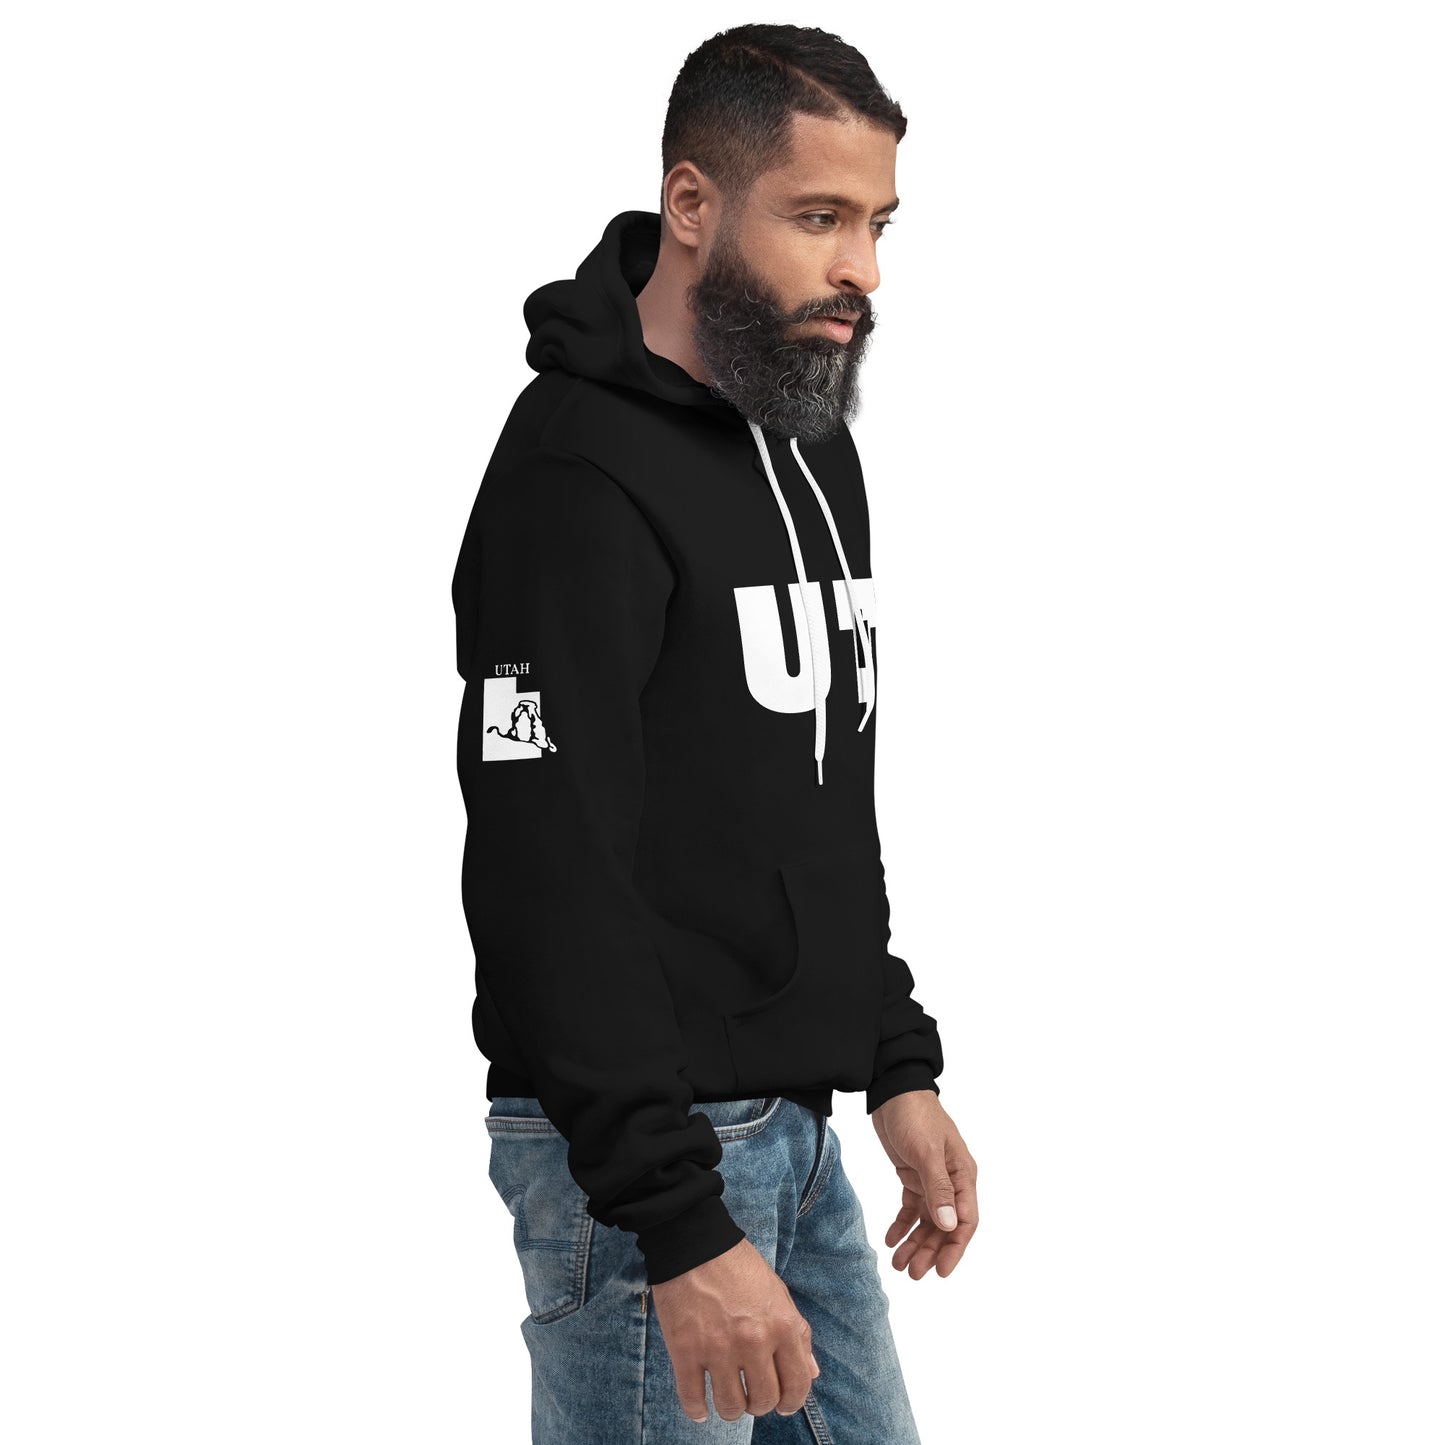 Unisex hoodie - UT (Utah)